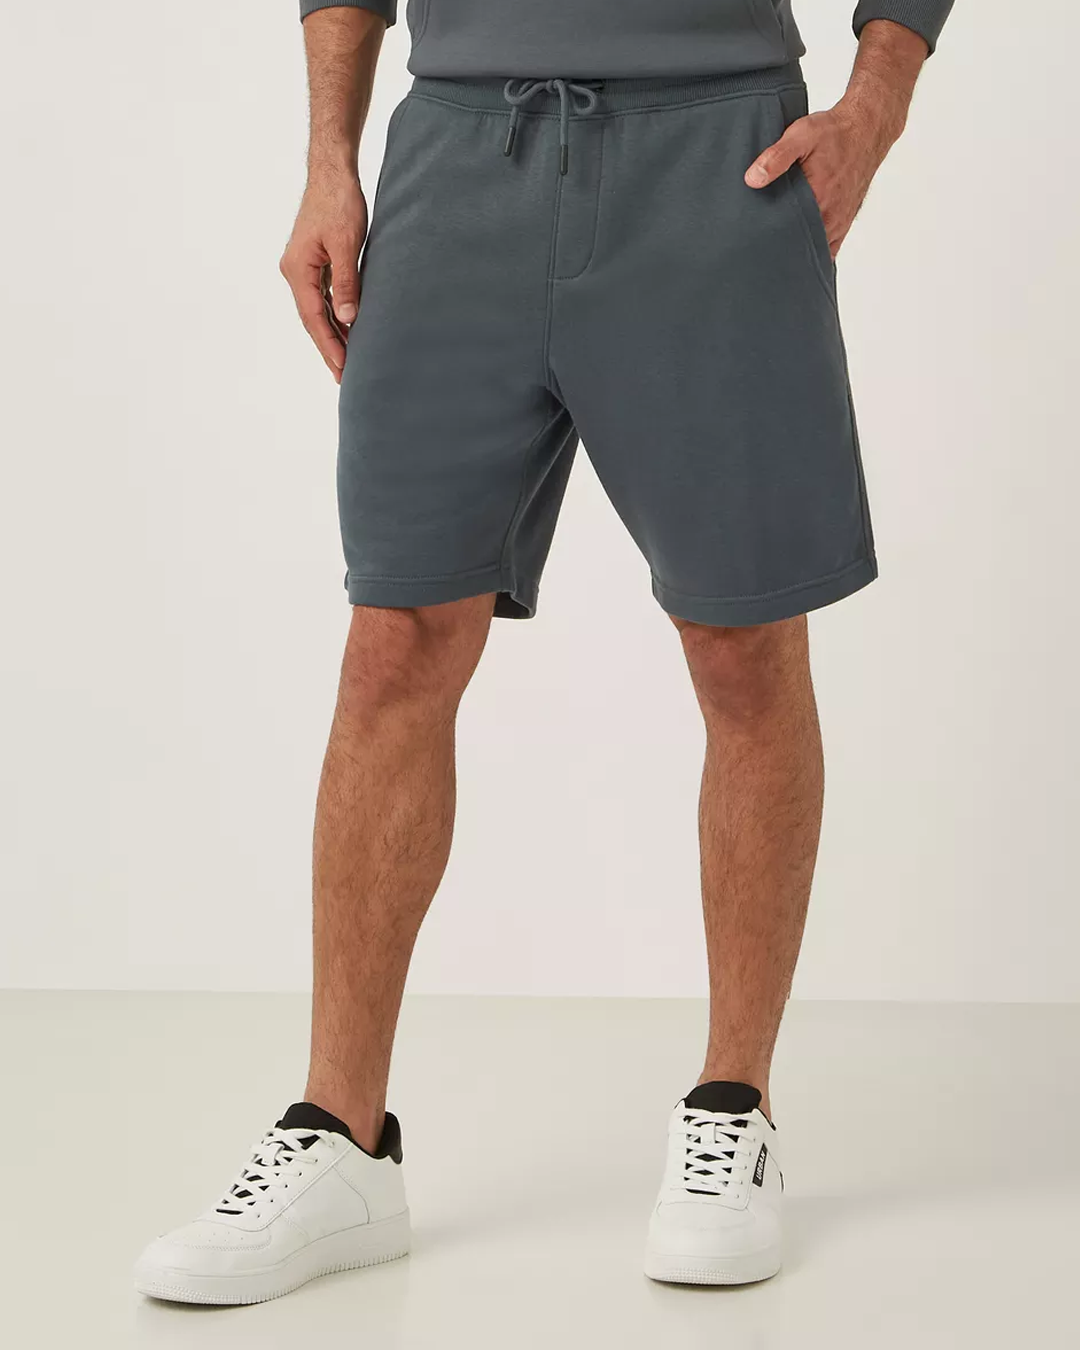 Plain brasula shorts